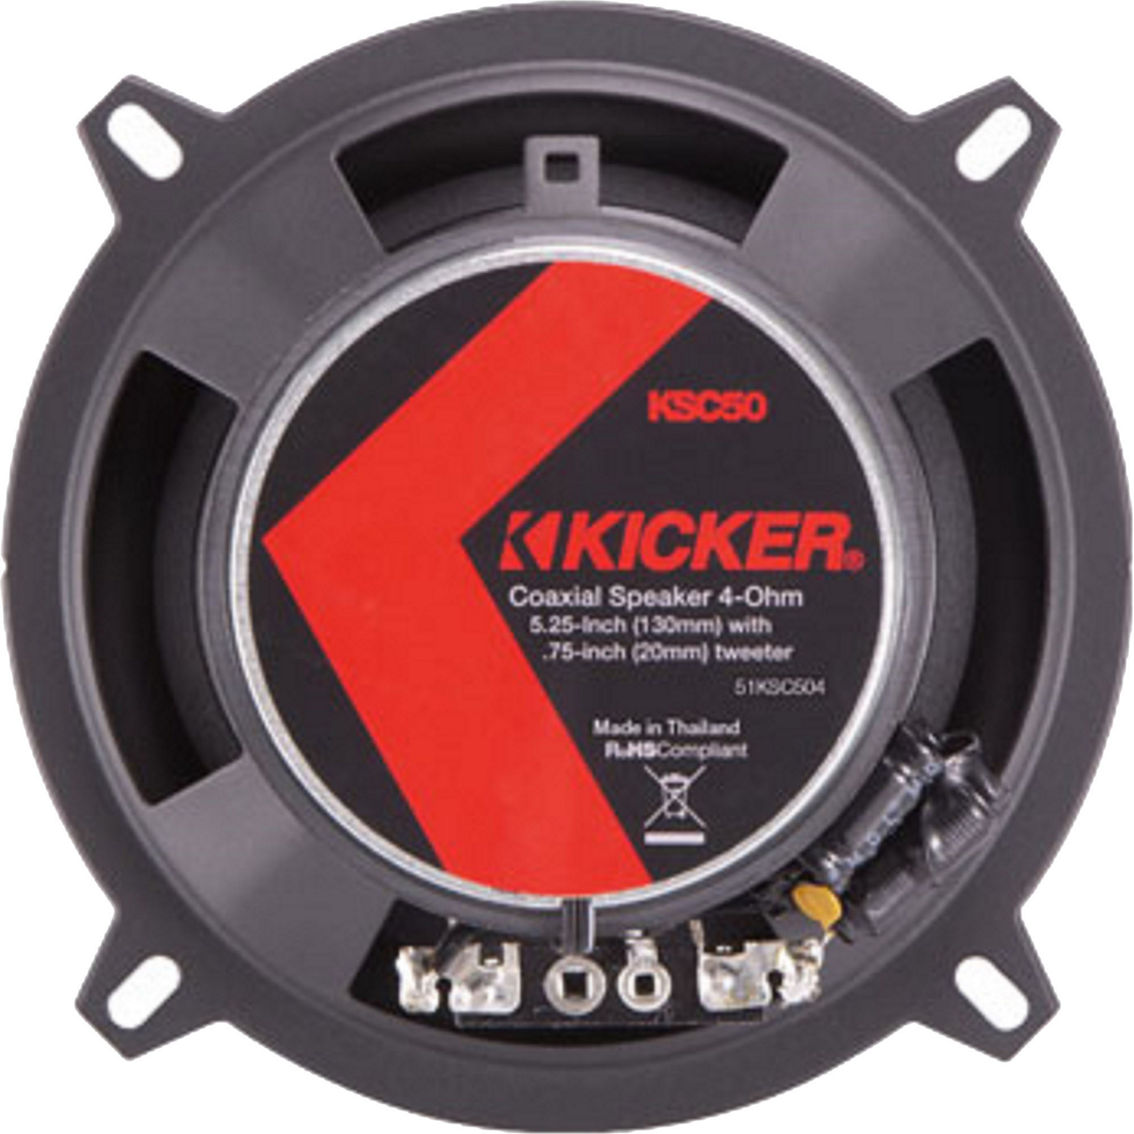 Kicker KSC50 5.25 in. Coaxial Speakers - Image 2 of 3